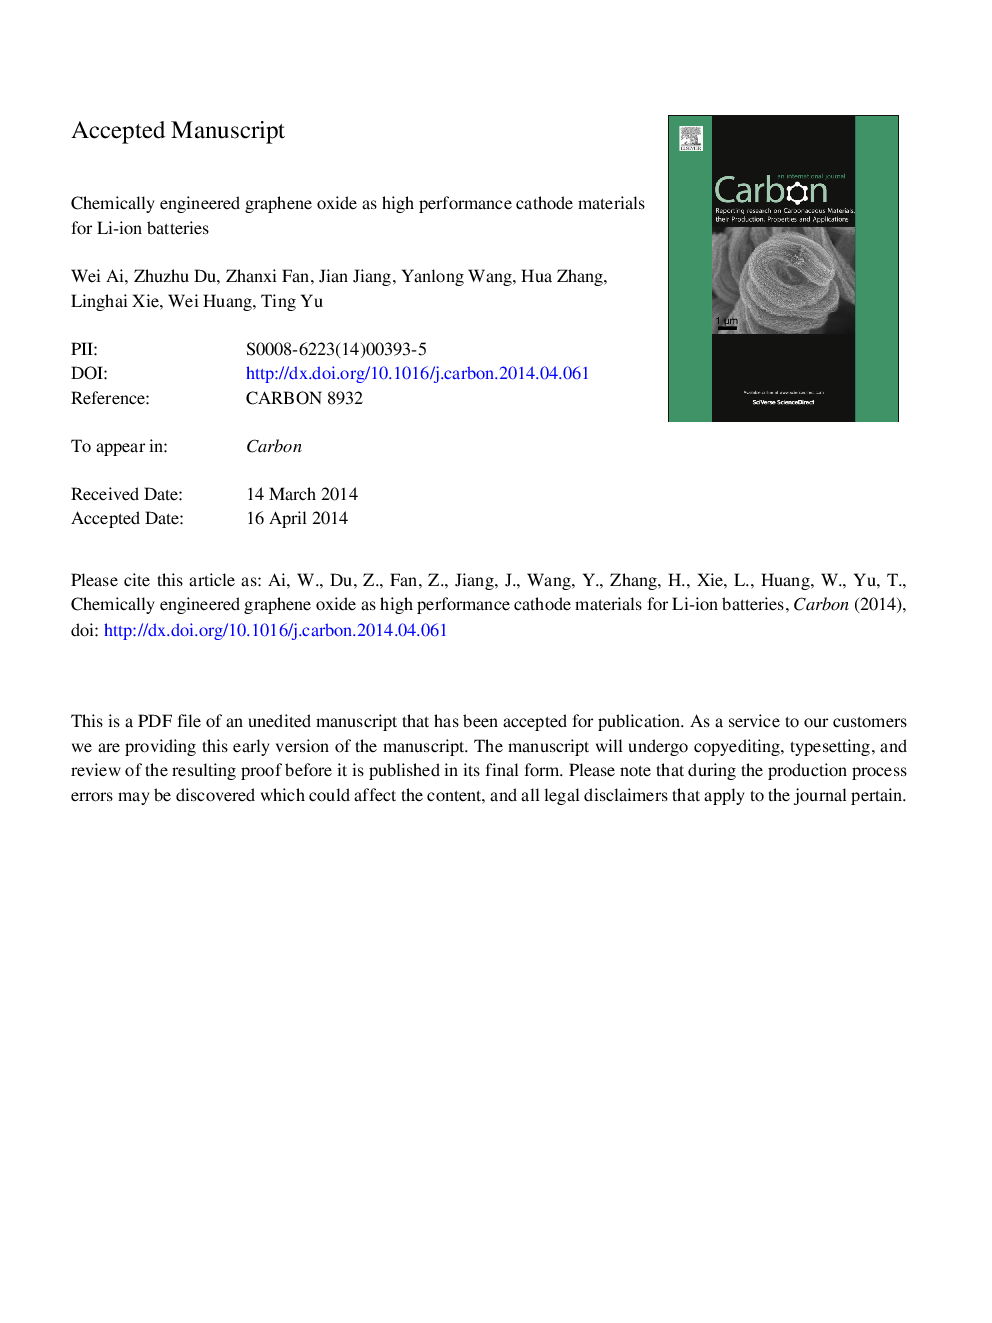 اکسید گرافن مهندسی شیمی به عنوان مواد کاتدی با کارایی بالا برای باتری های لیتیوم یون 